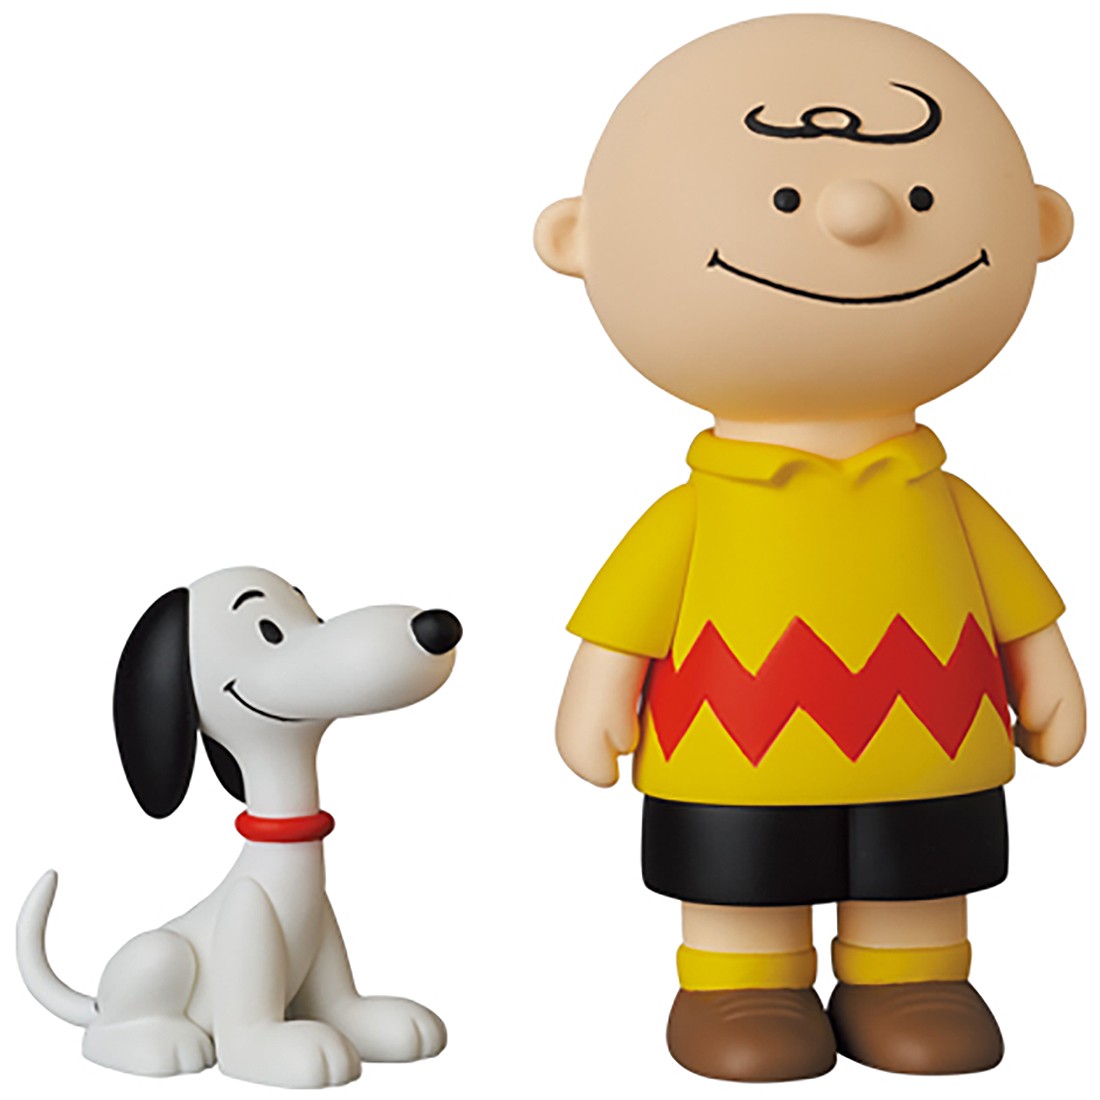 Medicom Toy Udf No.491 Peanuts Series 10 Queen`s Guard Snoopy Complete